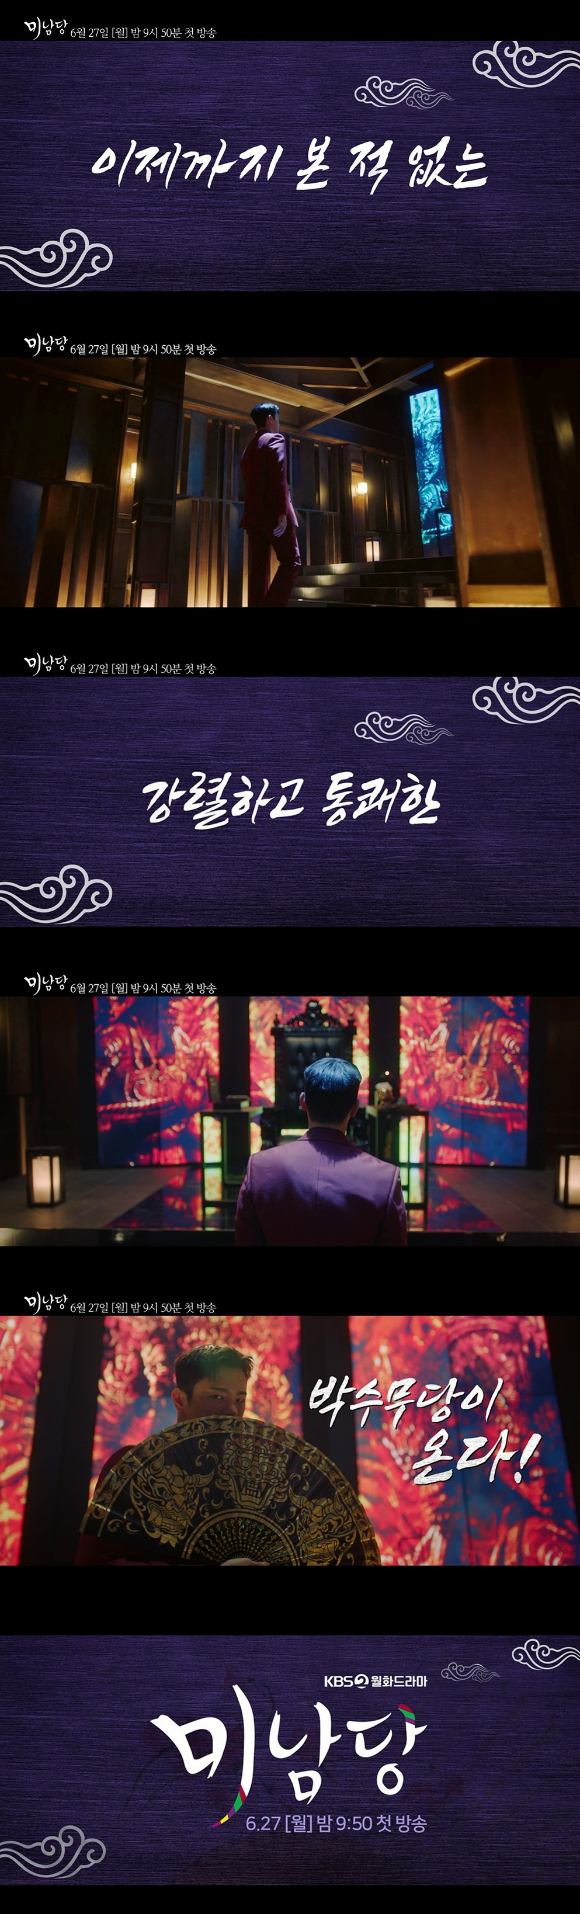 KBS 2TV '미남당' 티저가 공개됐다.  [사진=KBS 2TV]